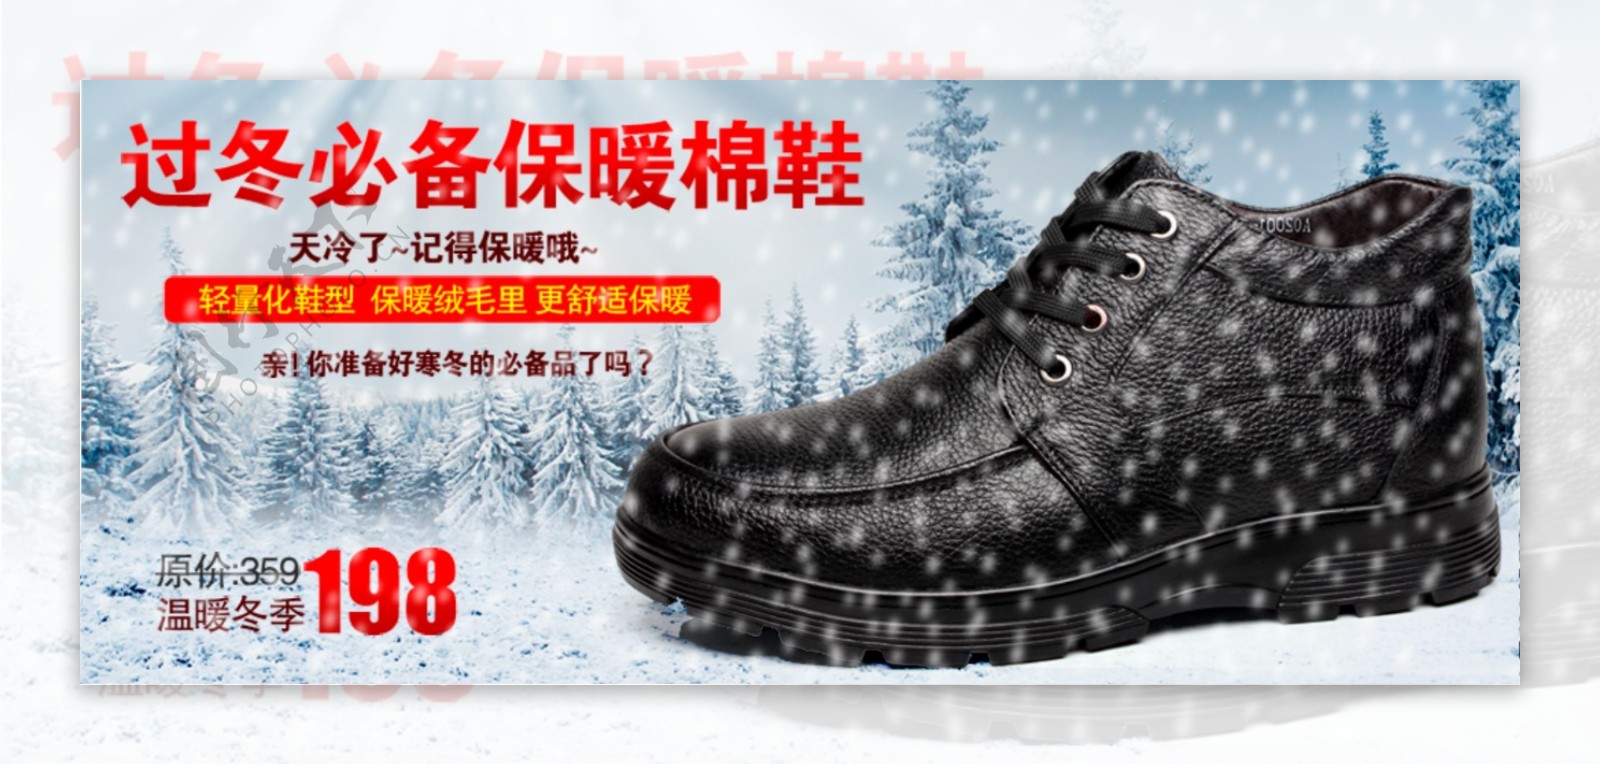 冬季保暖鞋促销海报